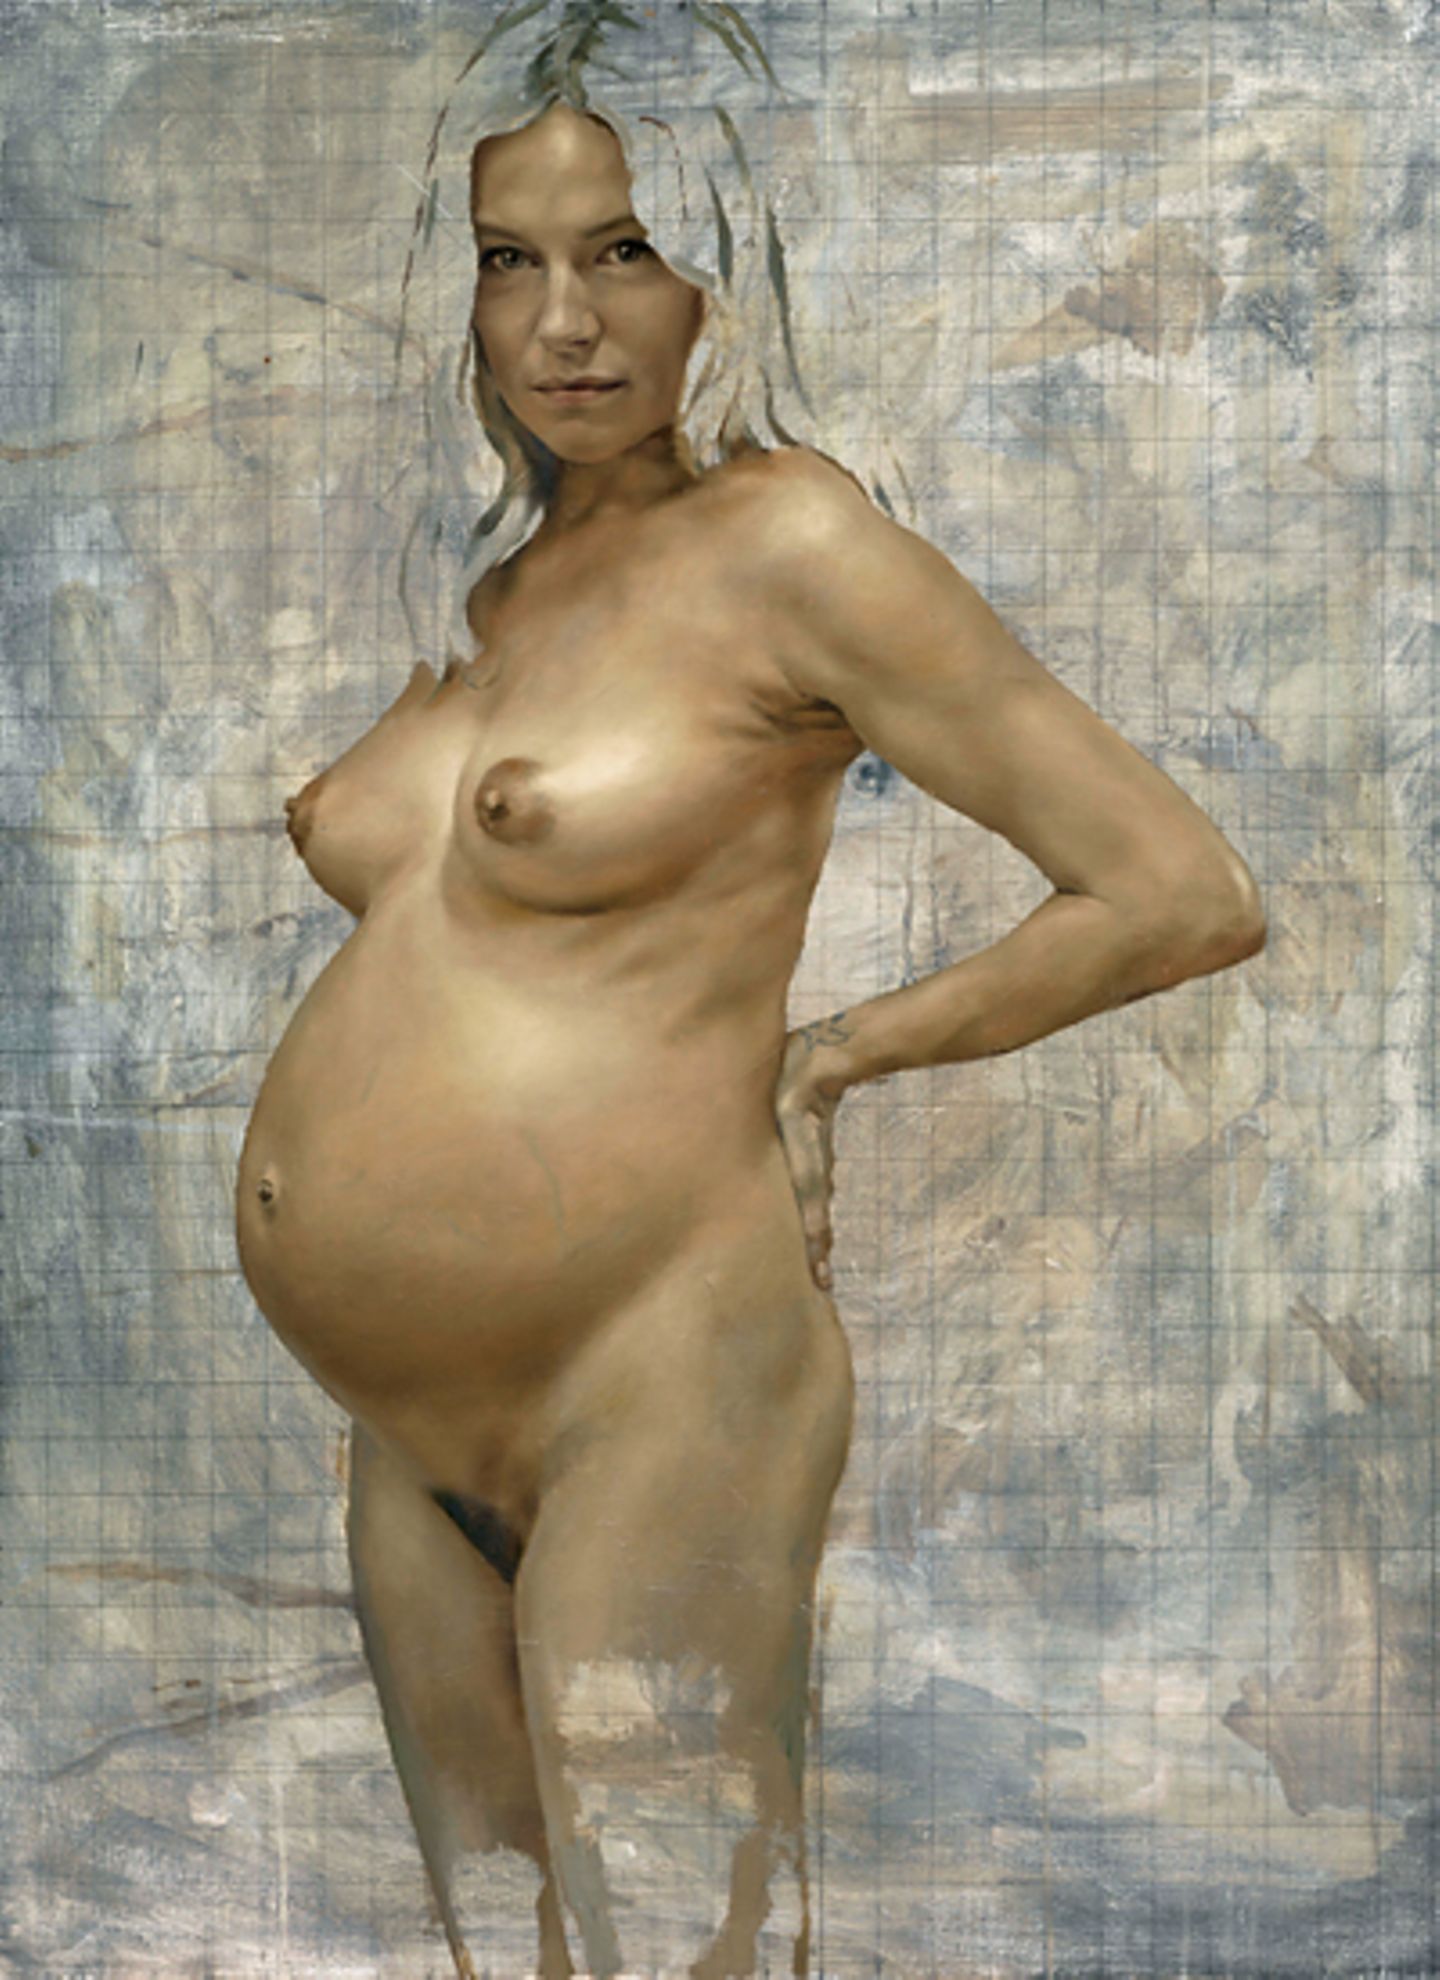 Wenige Wochen vor der Geburt ihrer Tochter Marlowe posierte Sienna Miller nackt für den Künstler Jonathan Yeo. Das Bild ist nun